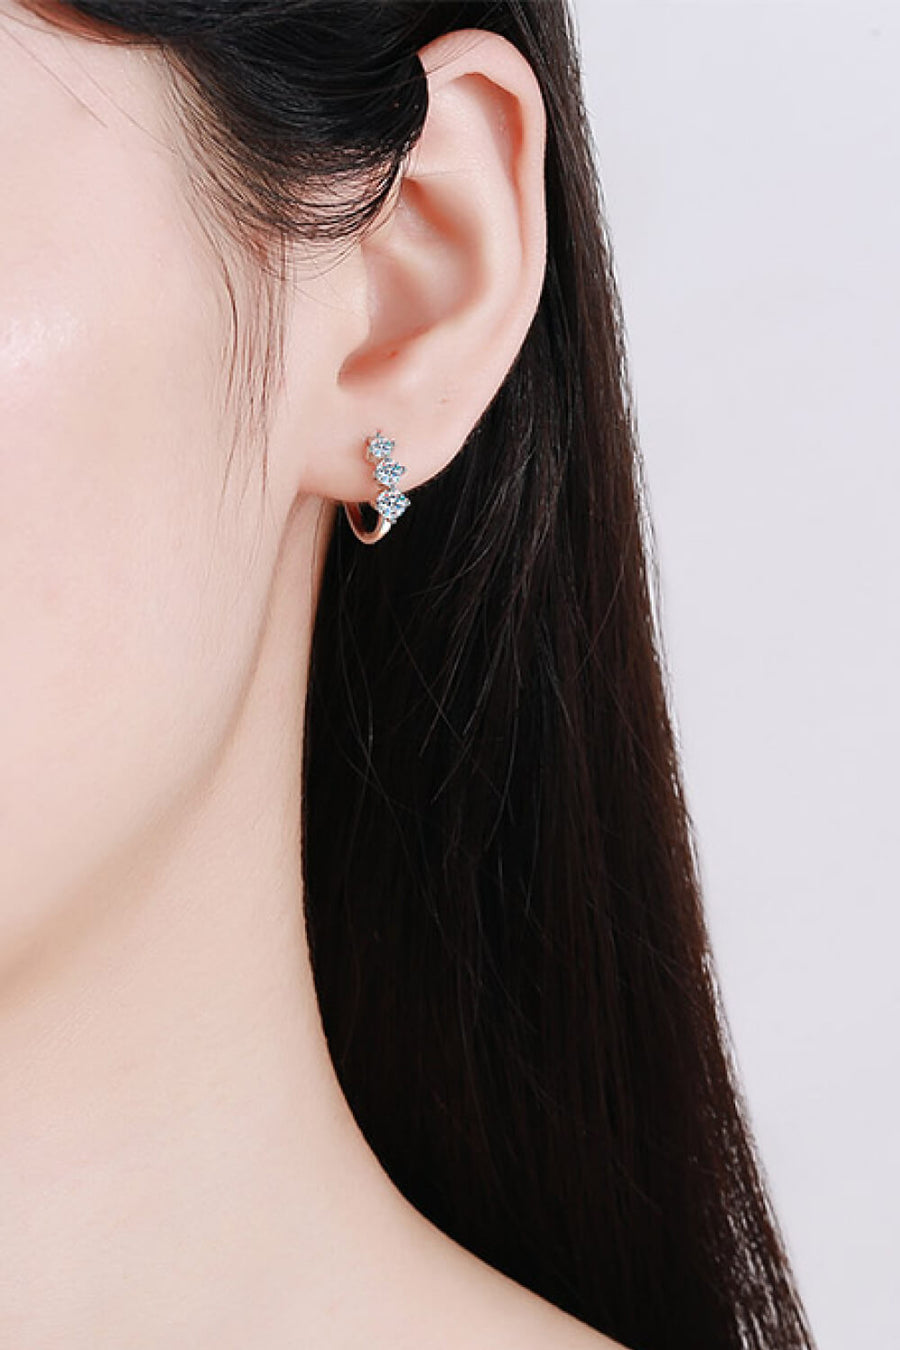 Best Diamond Earrings Jewelry Gifts for Women | 0.72 Carat Diamond Huggie Earrings  | MASON New York